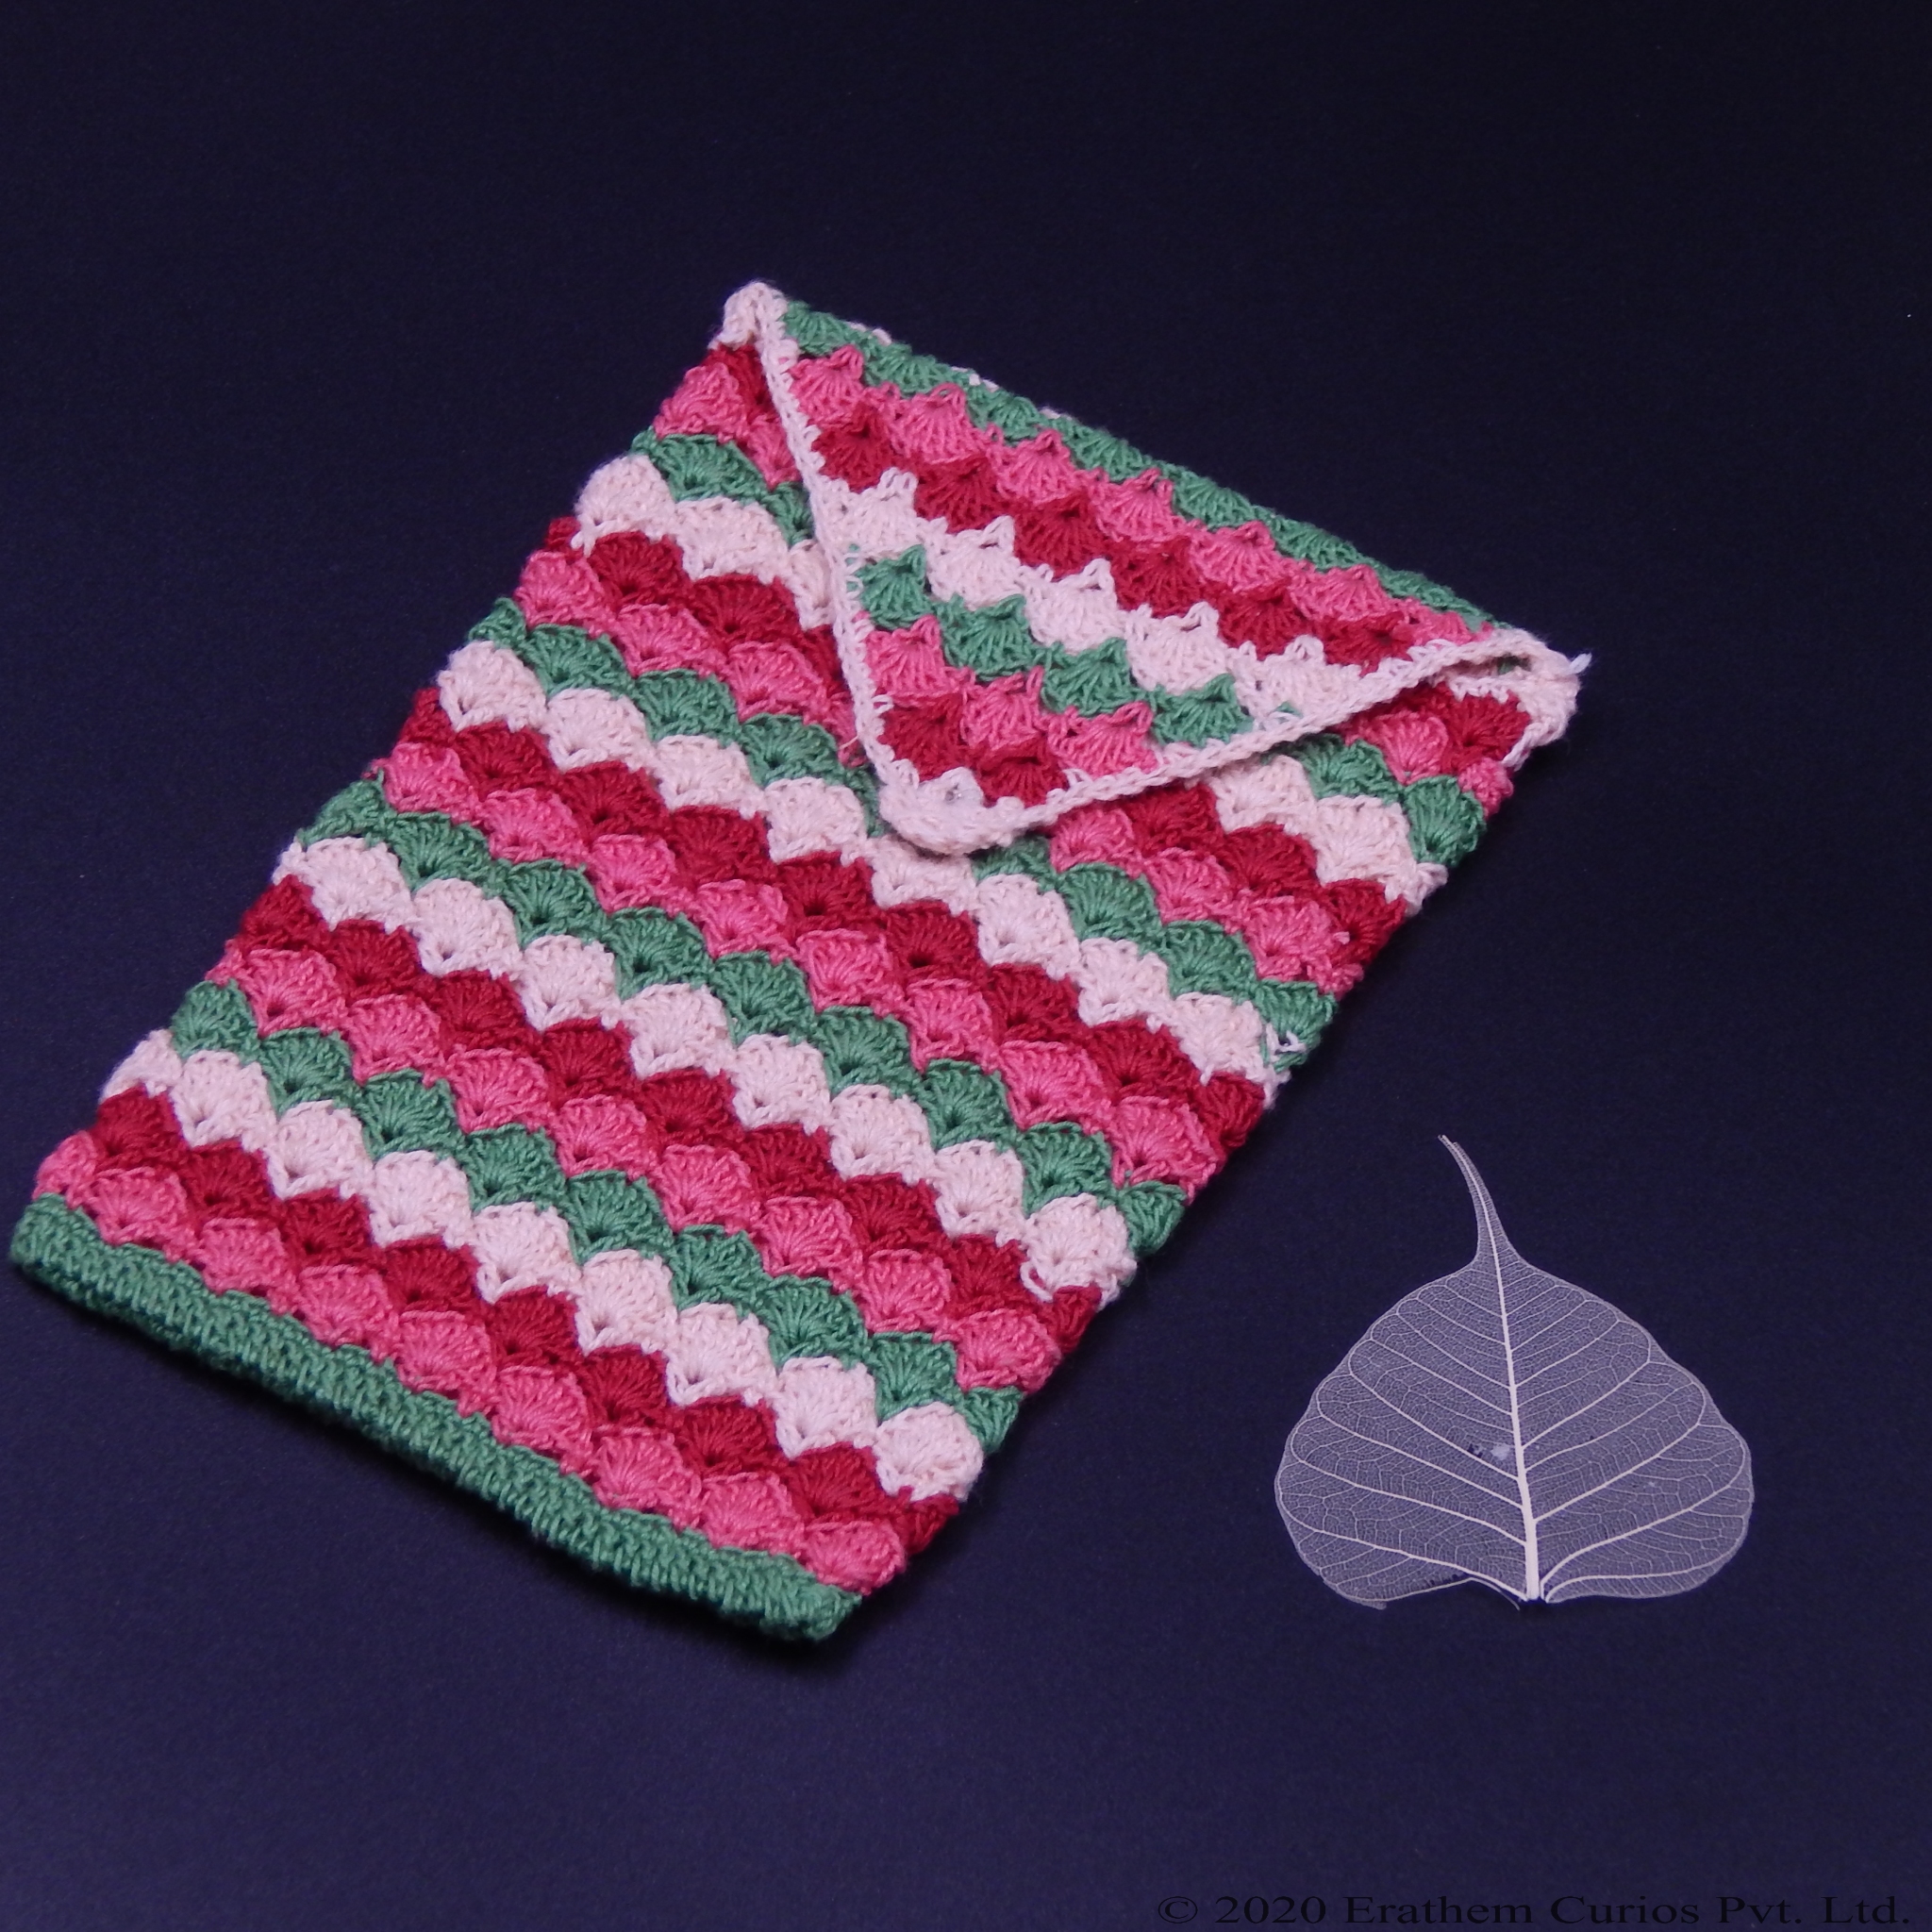 Scrap Yarn Crochet Basket - Scrapbusting Idea! | My Poppet Makes